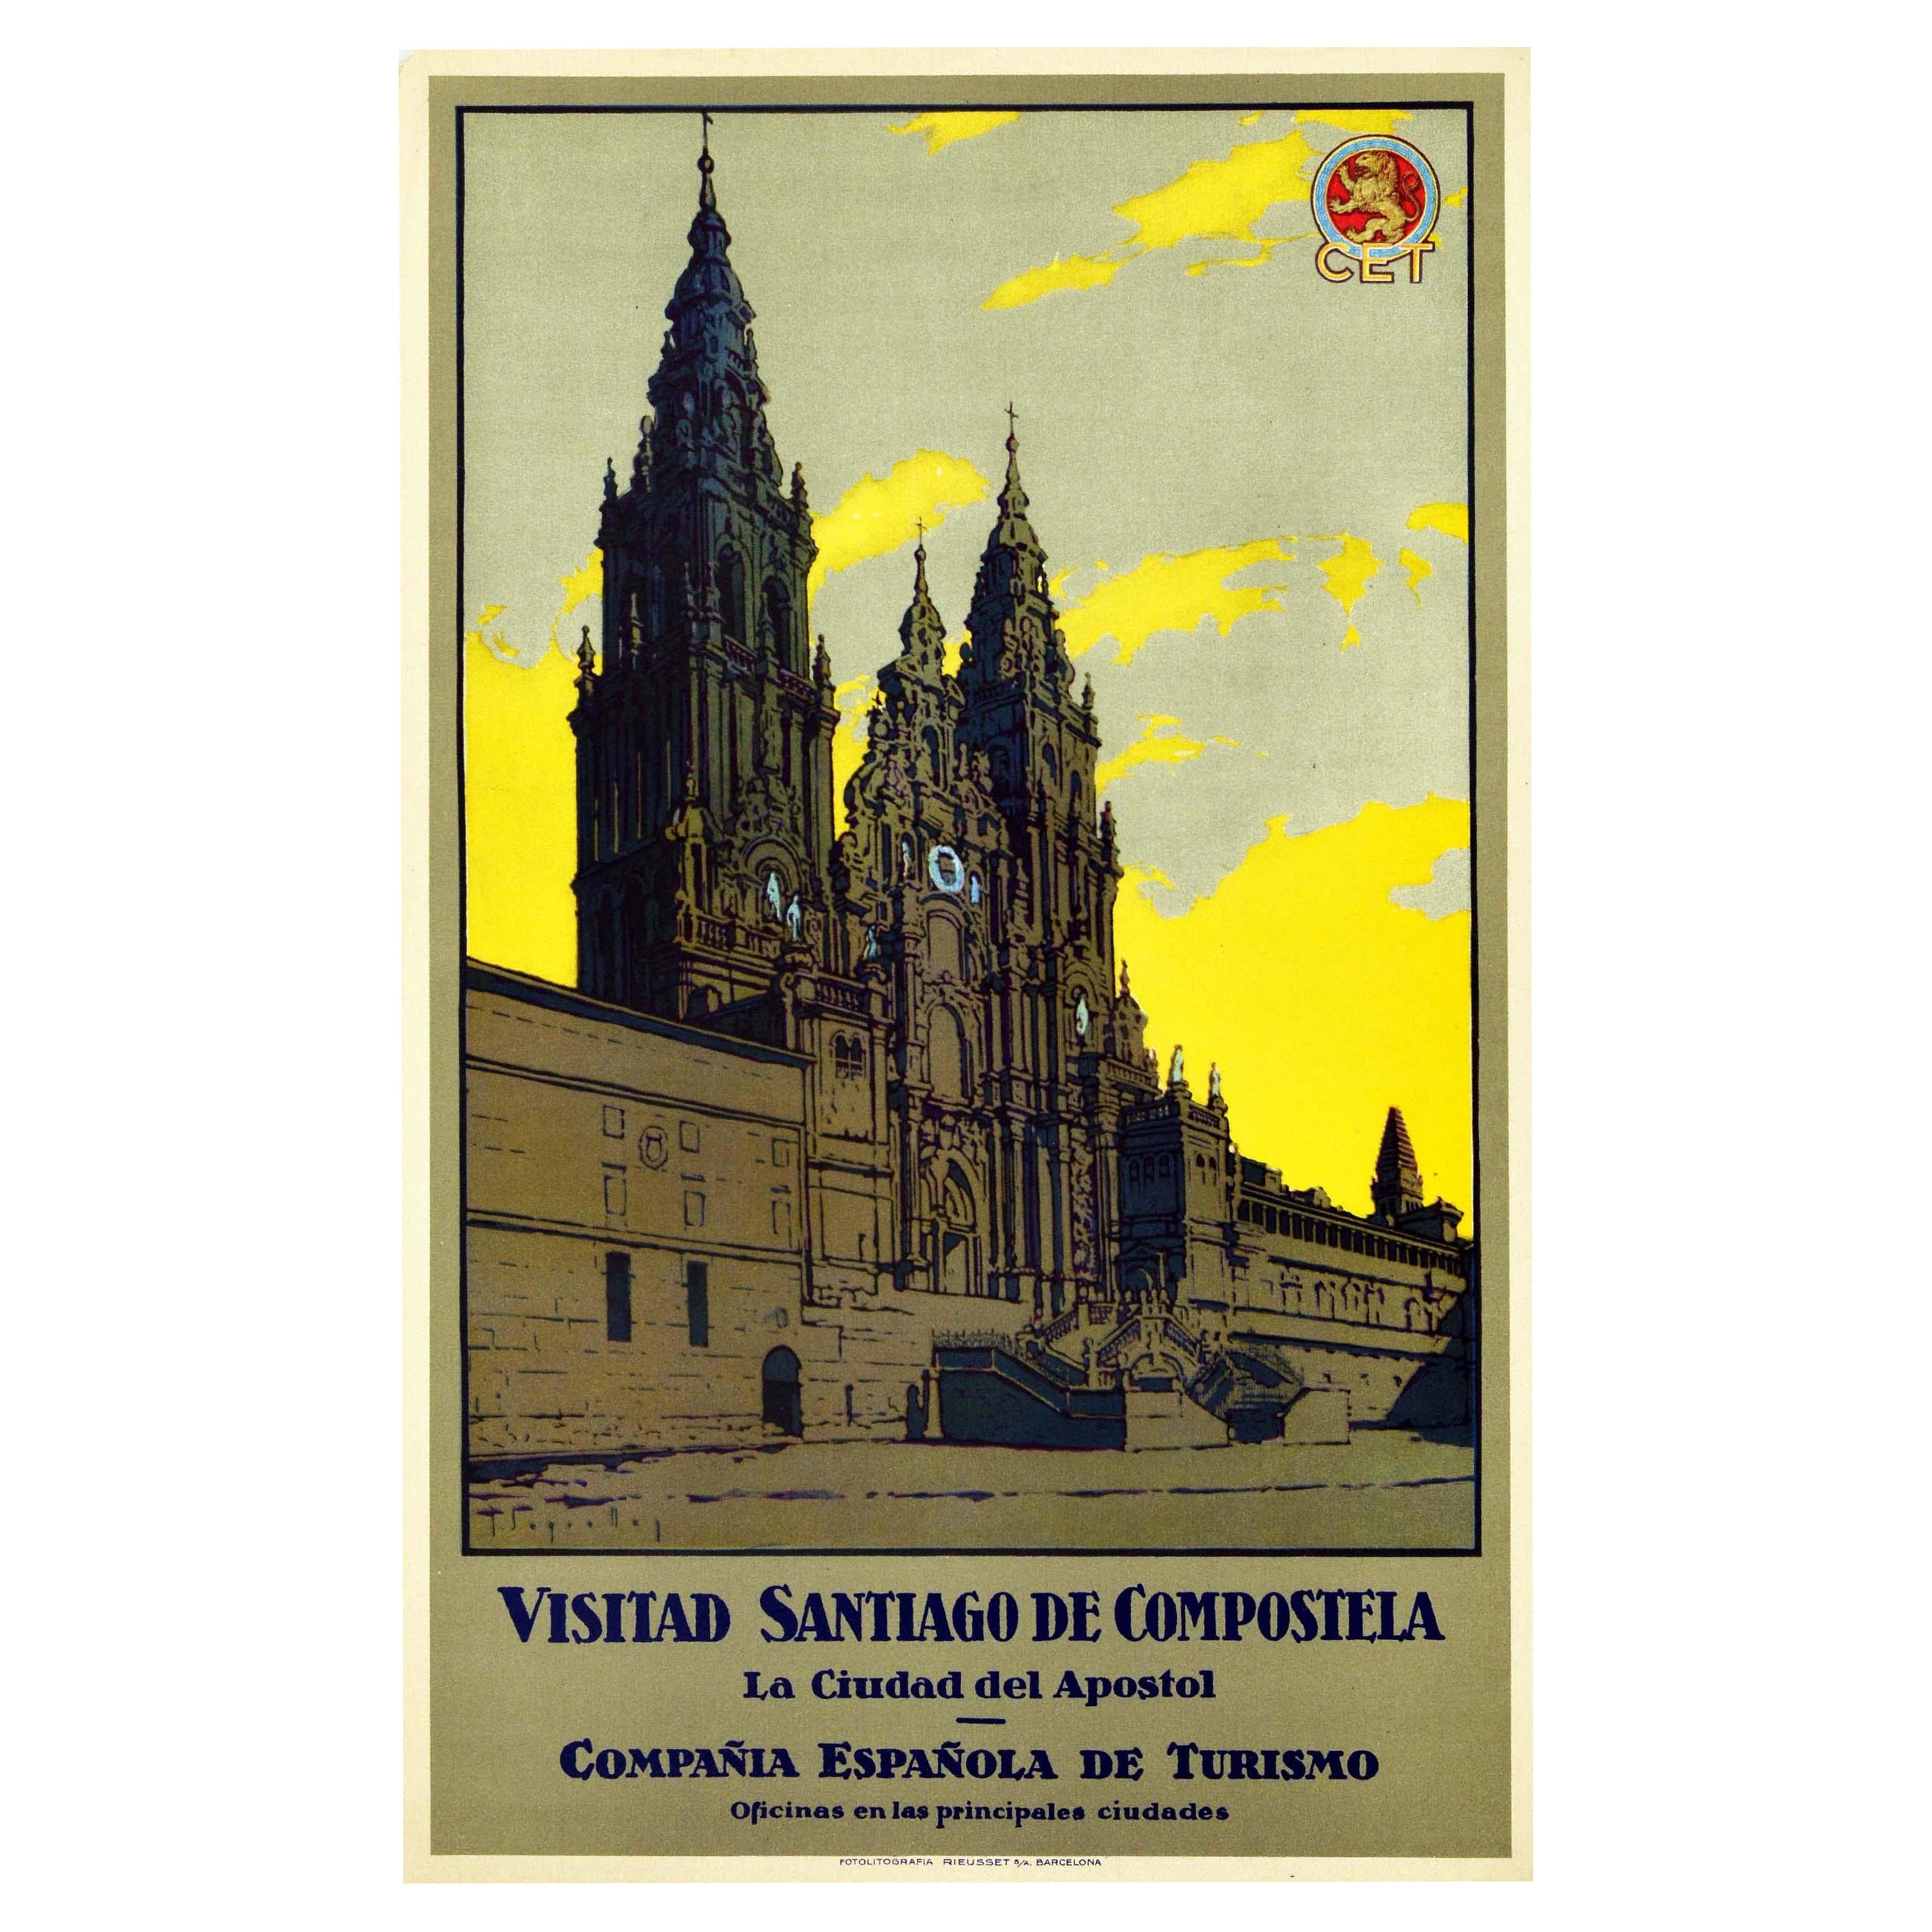 Original Vintage Travel Poster Visitad Santiago De Compostela Cathedral Basilica